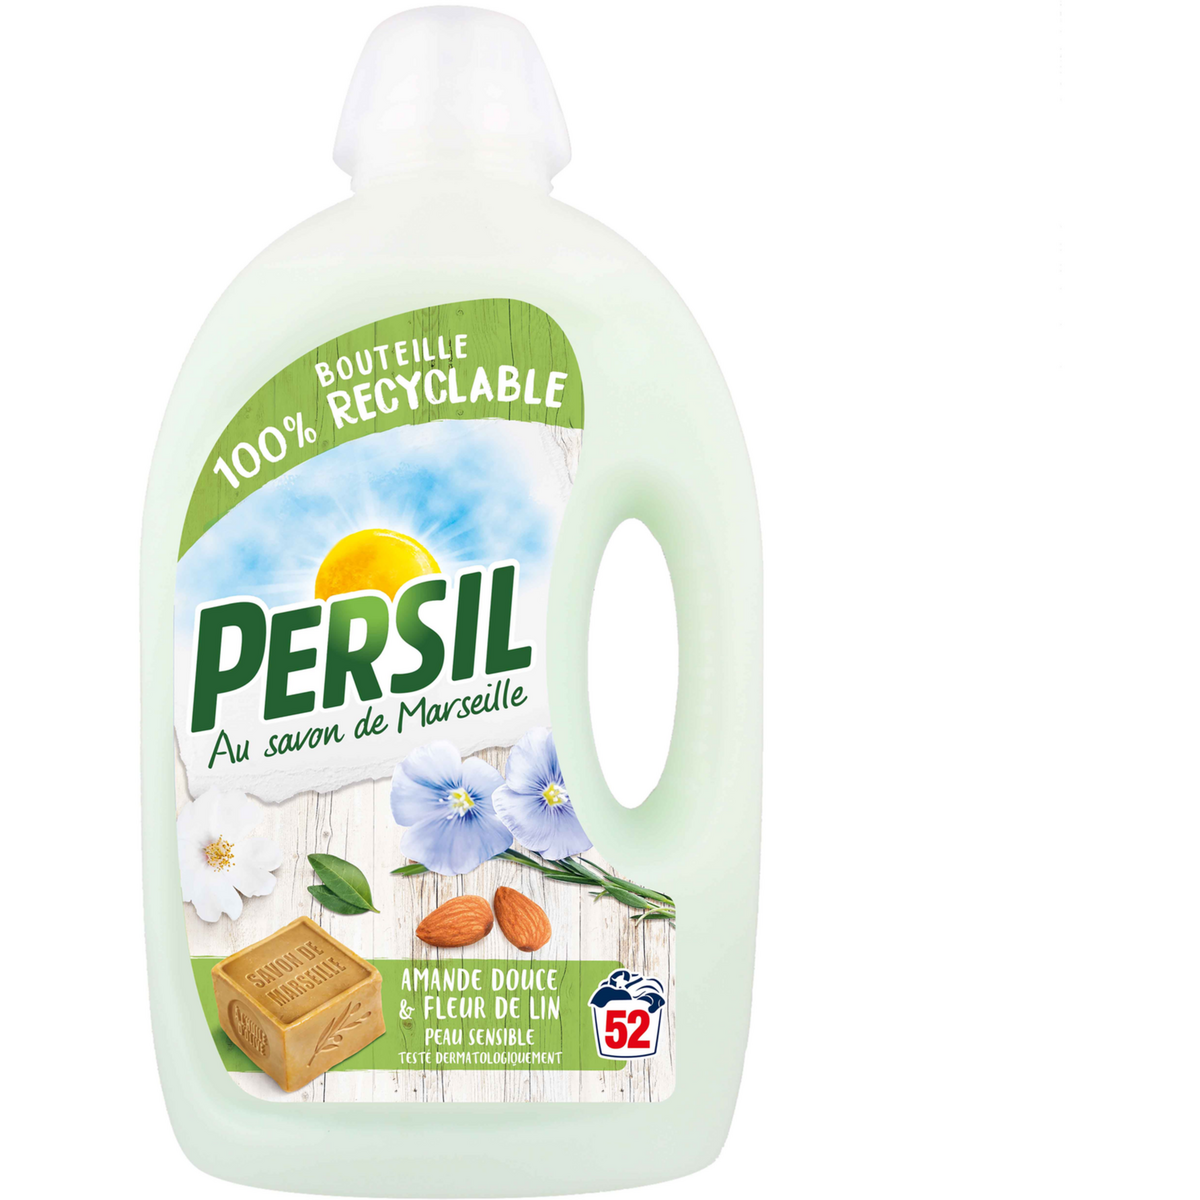 PERSIL Lessive liquide amande douce & fleur de lin peau sensible 52 lavages 2,6l